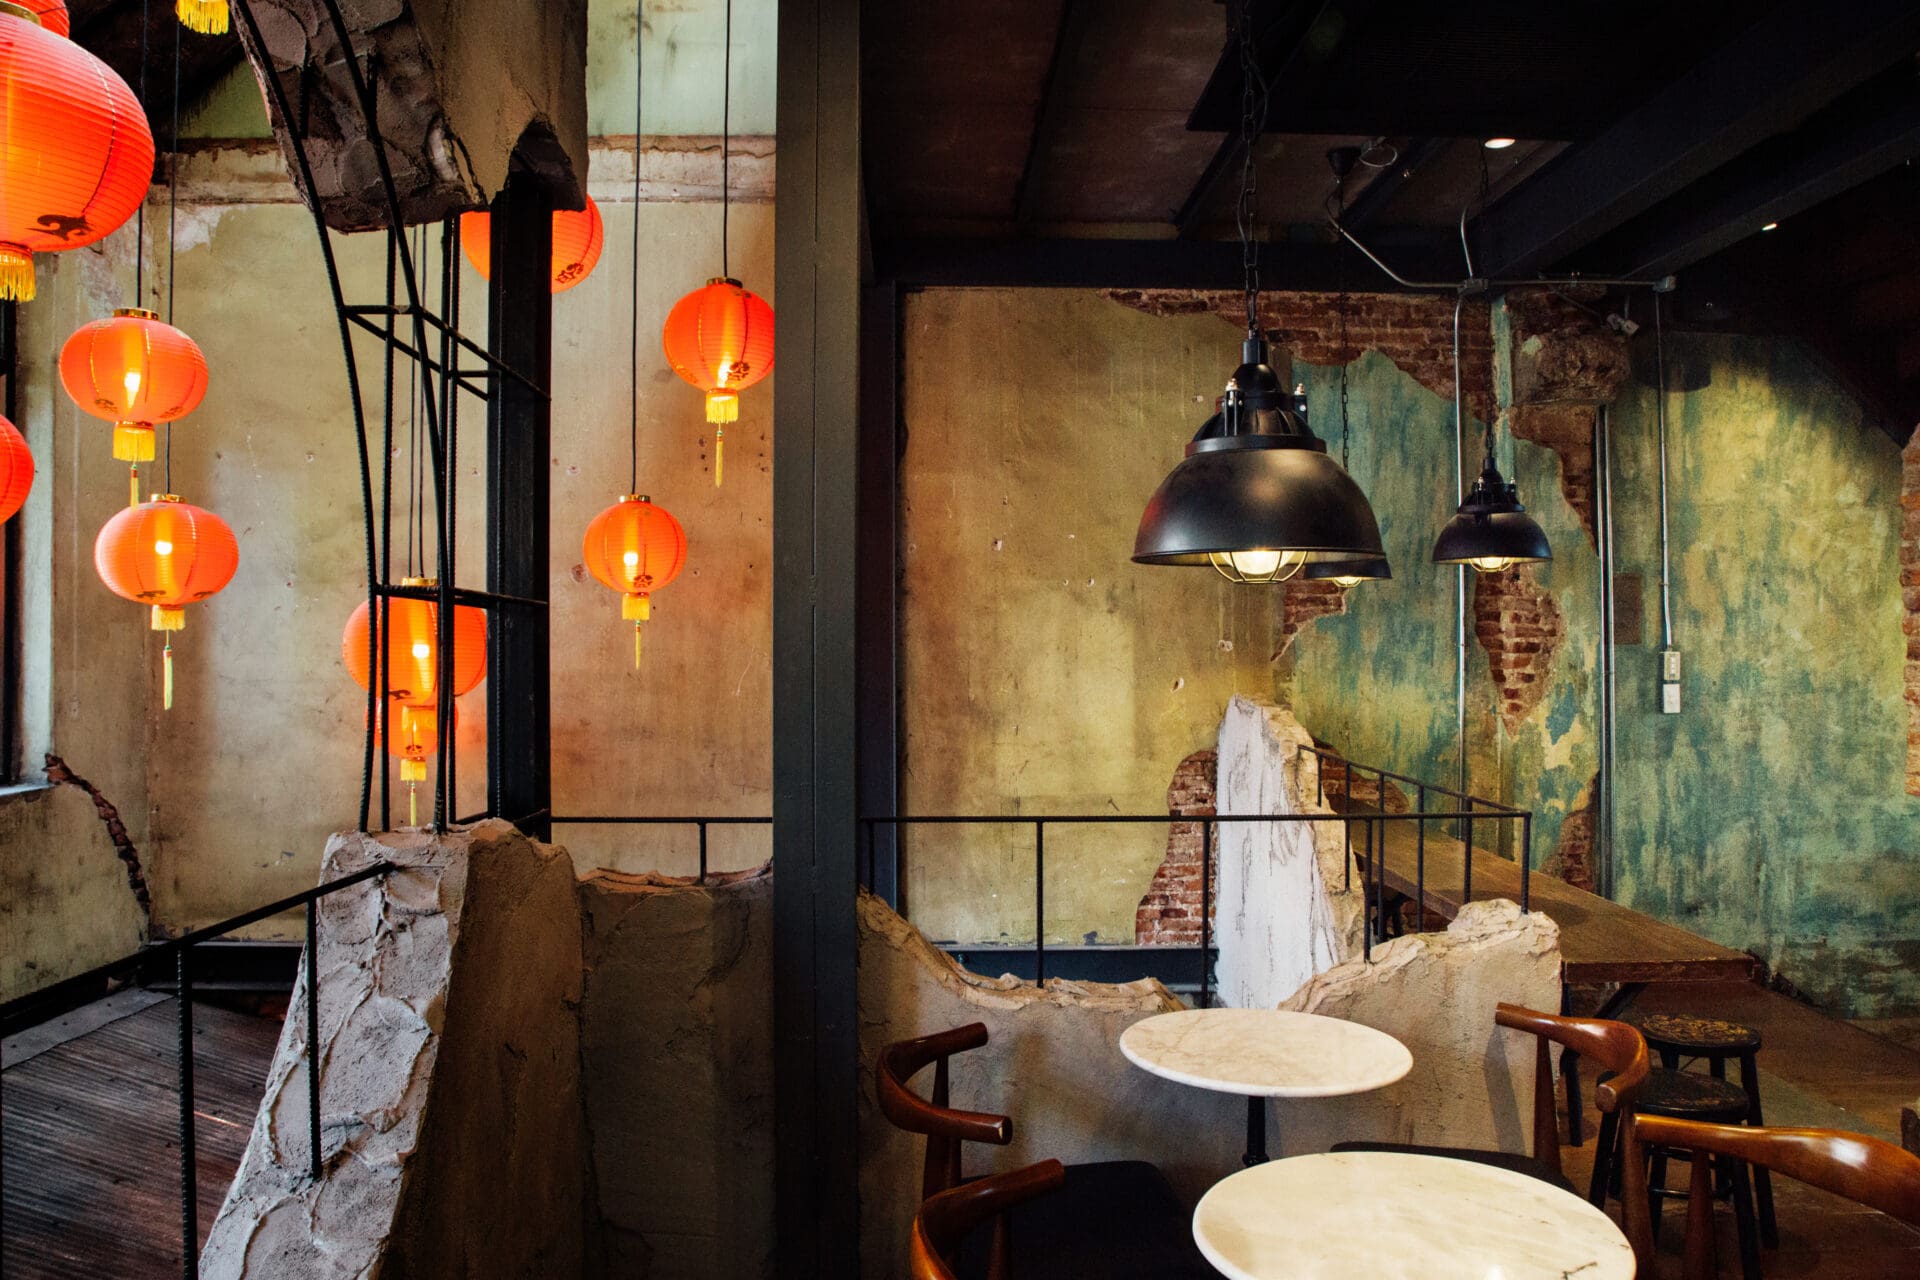 Six Of The Best: Bangkok's Riverside Restaurants